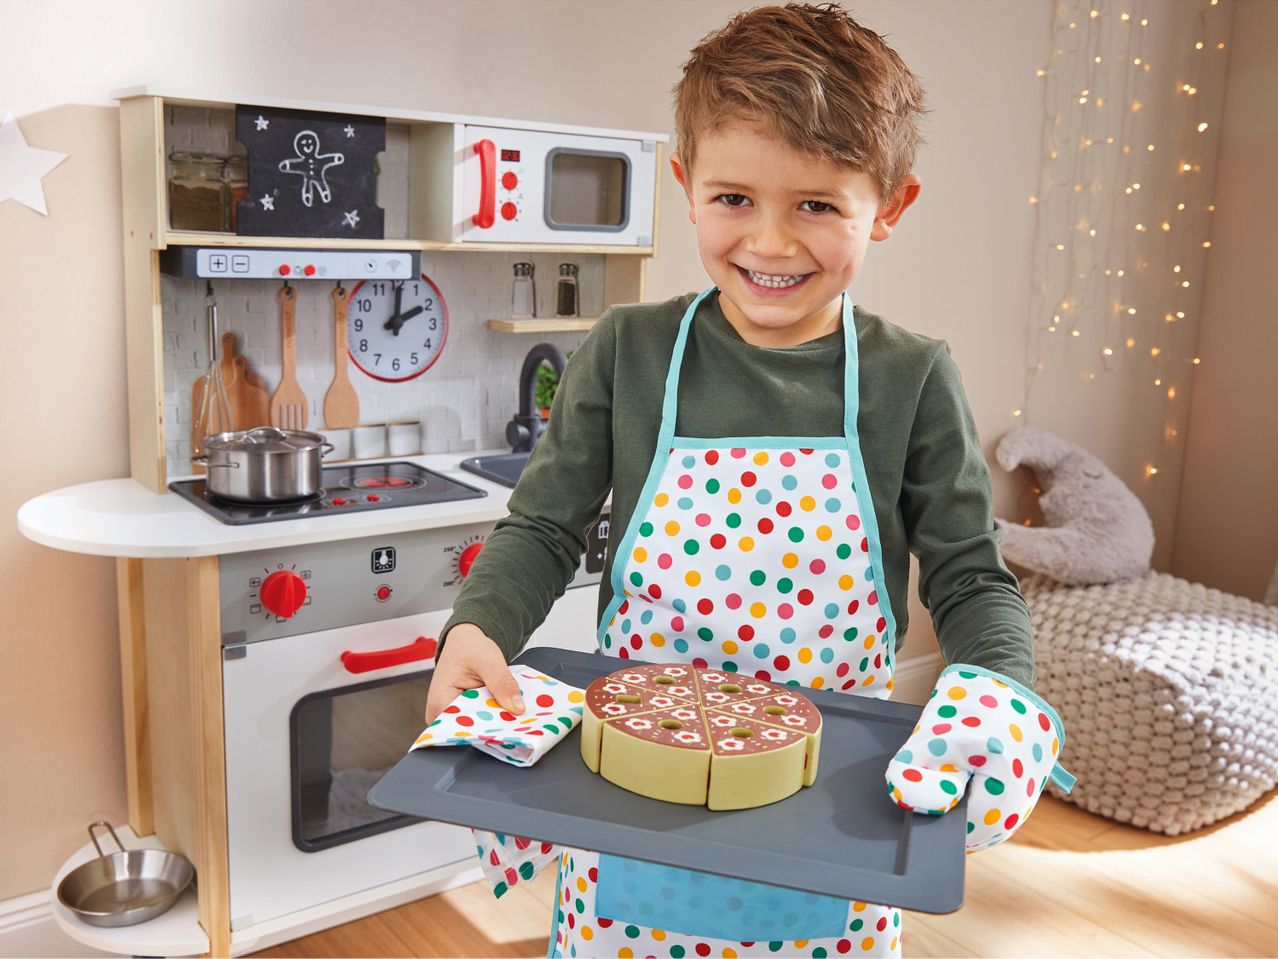 Cucina per bambini , prezzo 69 EUR 
Cucina per bambini 
- Porta scorrevole con lavagna ...